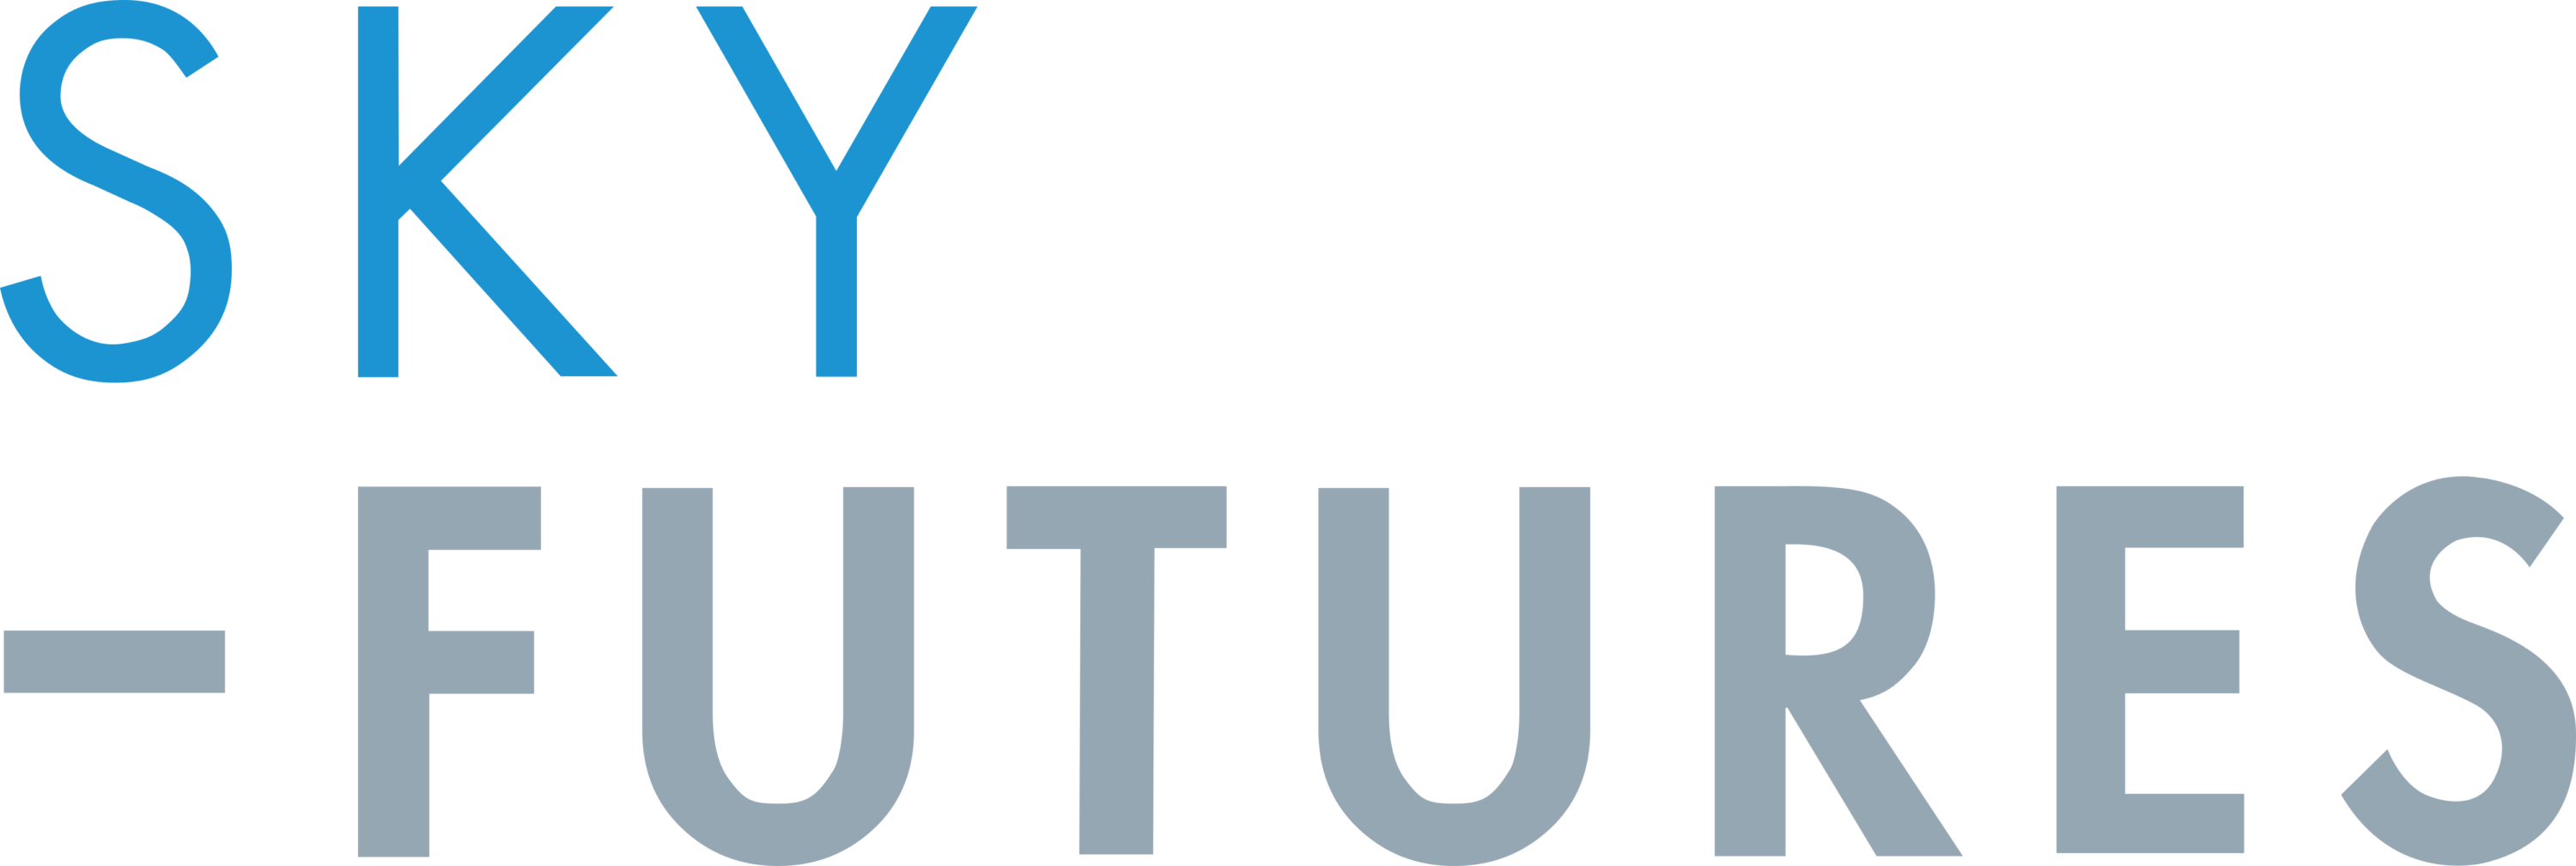 Sky Futures Logo